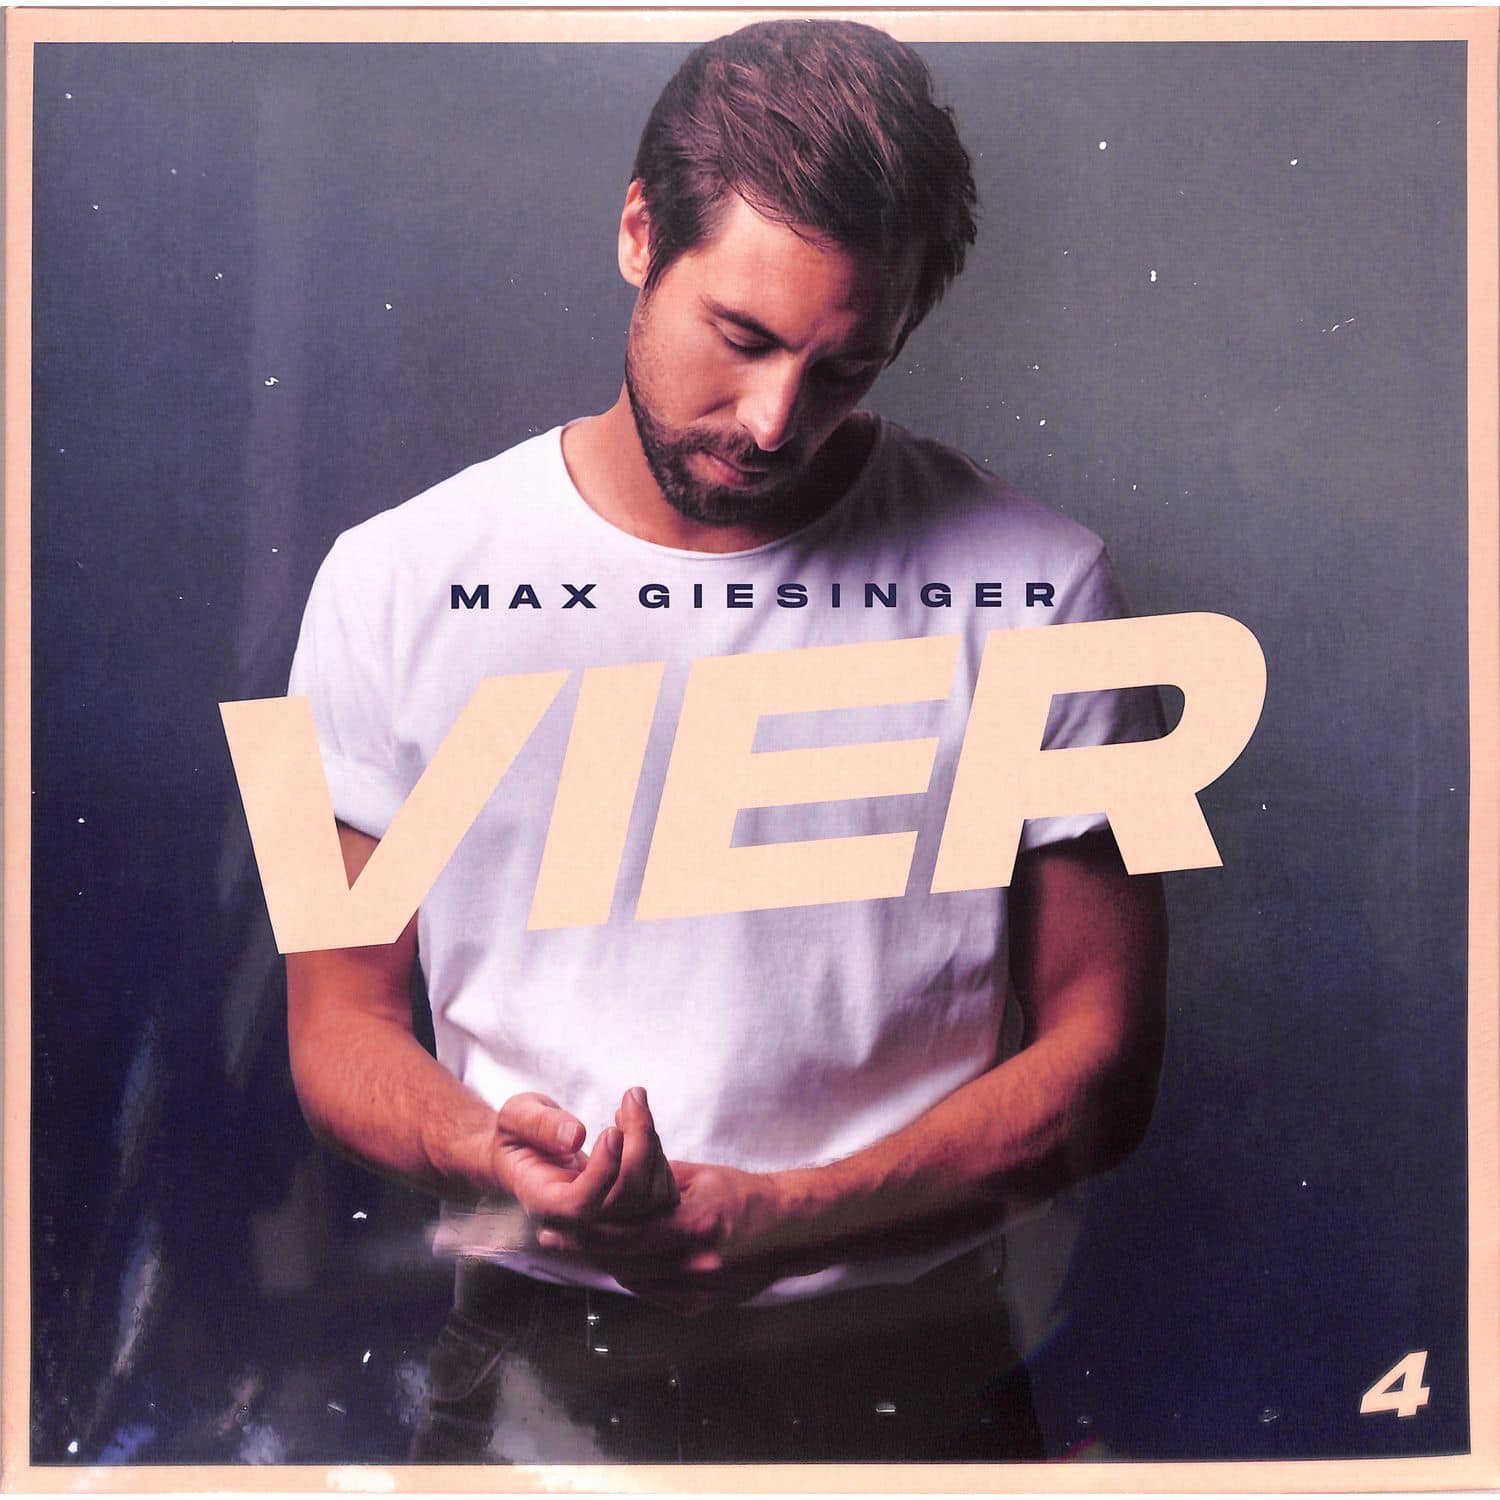 Max Giesinger - VIER 